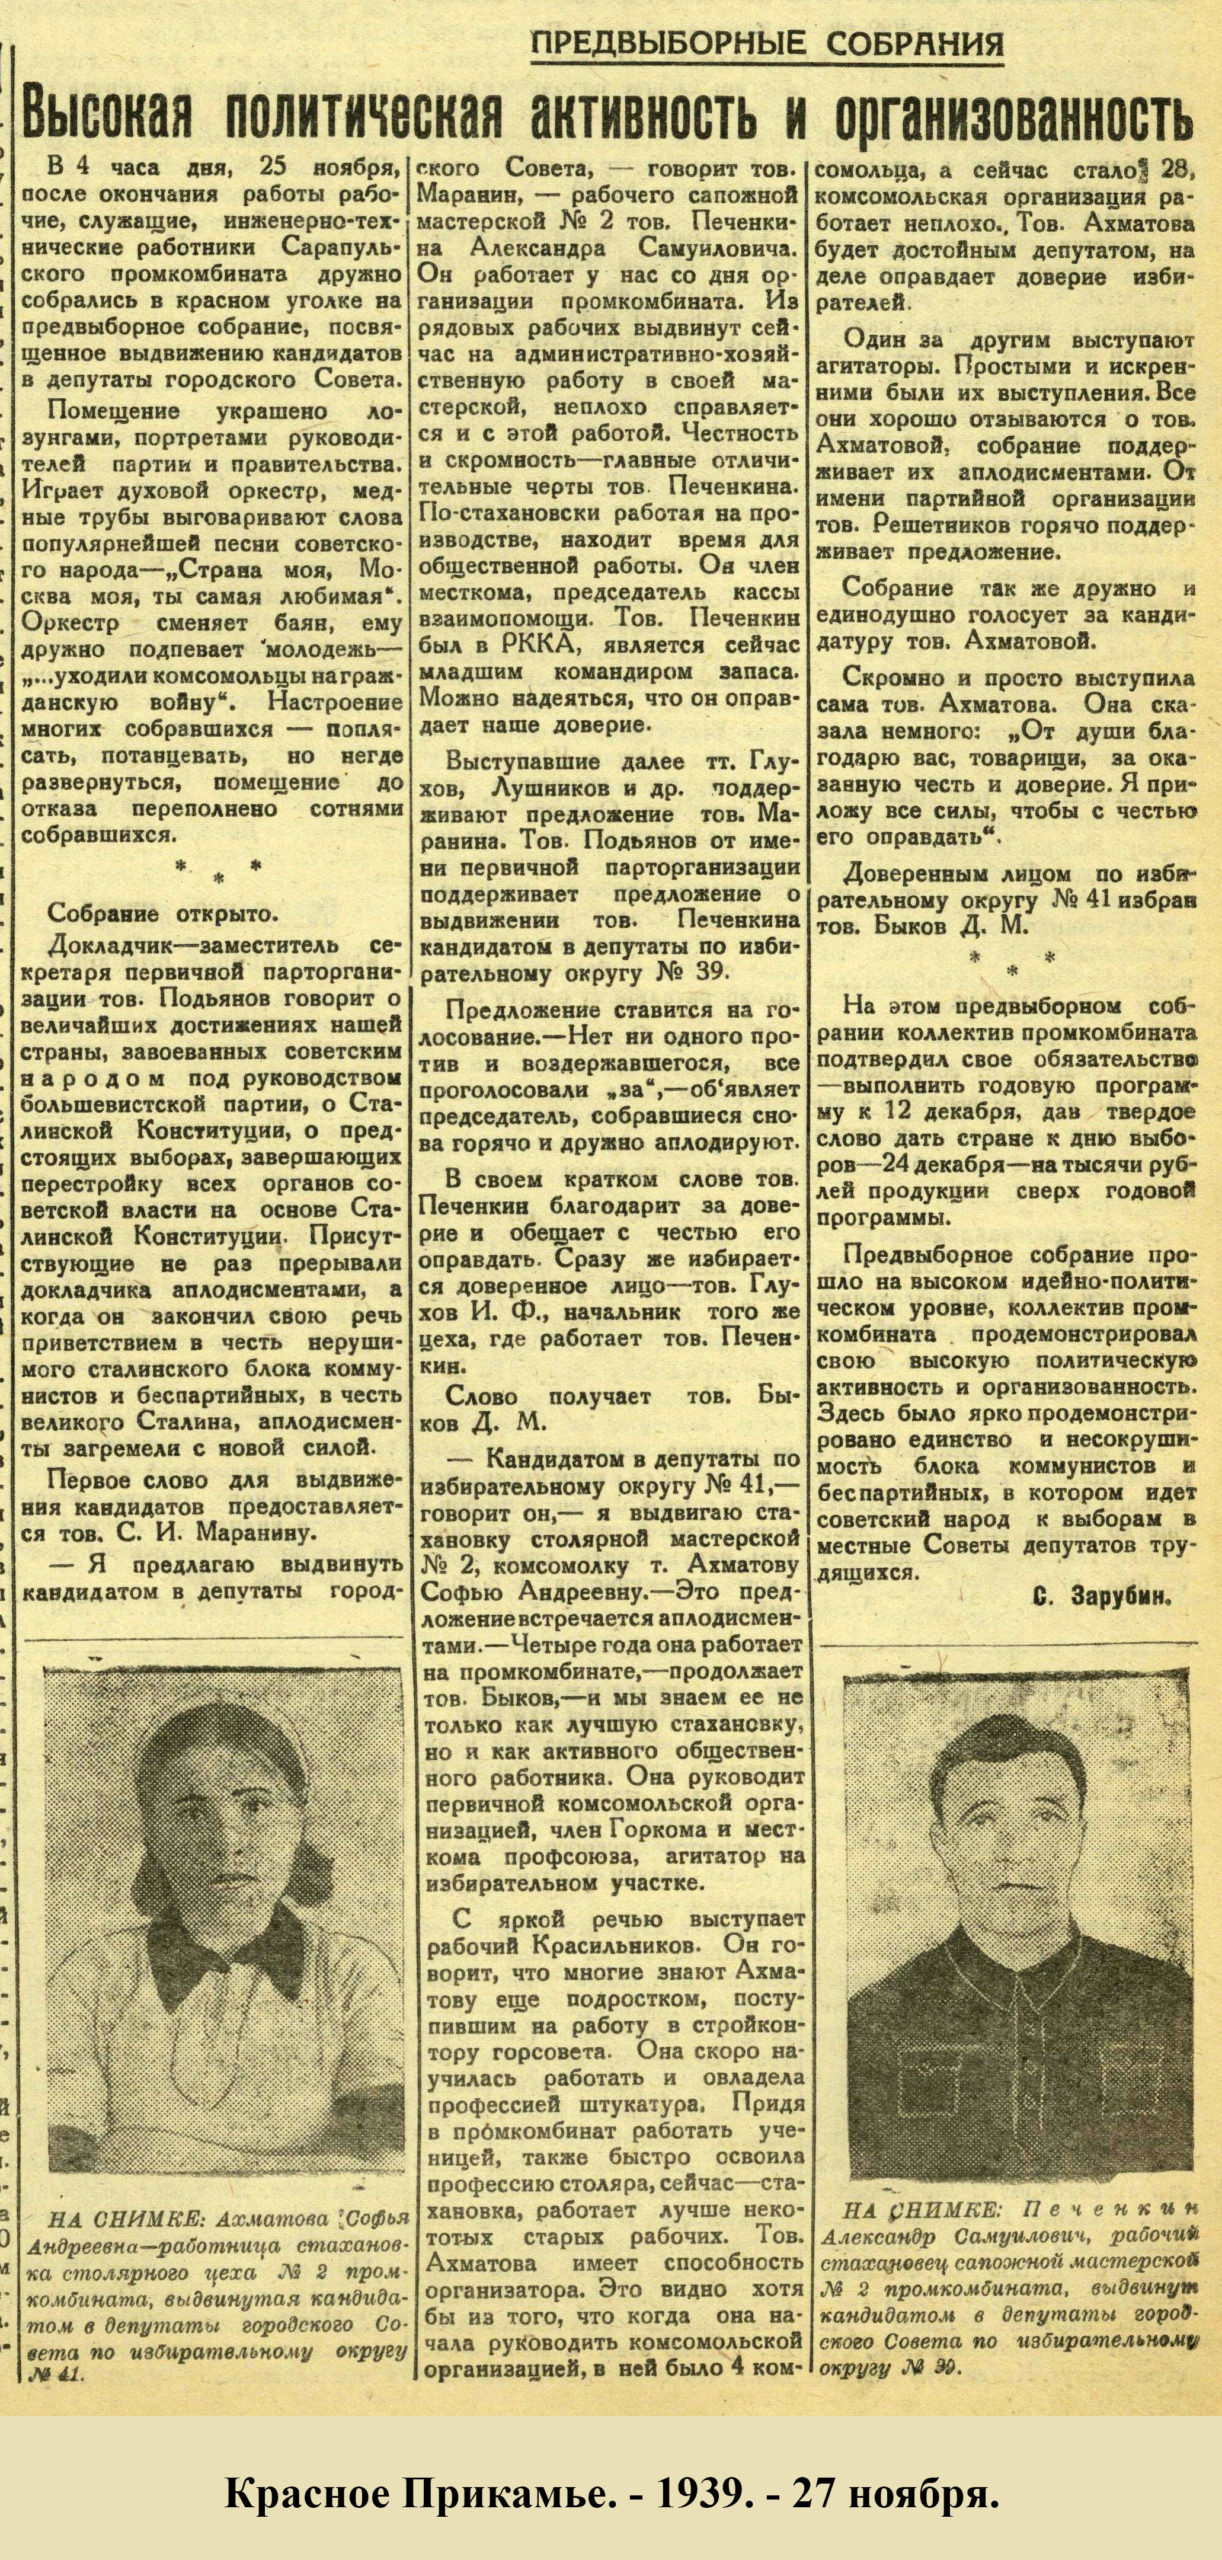 Красное Прикамье. - 1939. - 27 ноября.